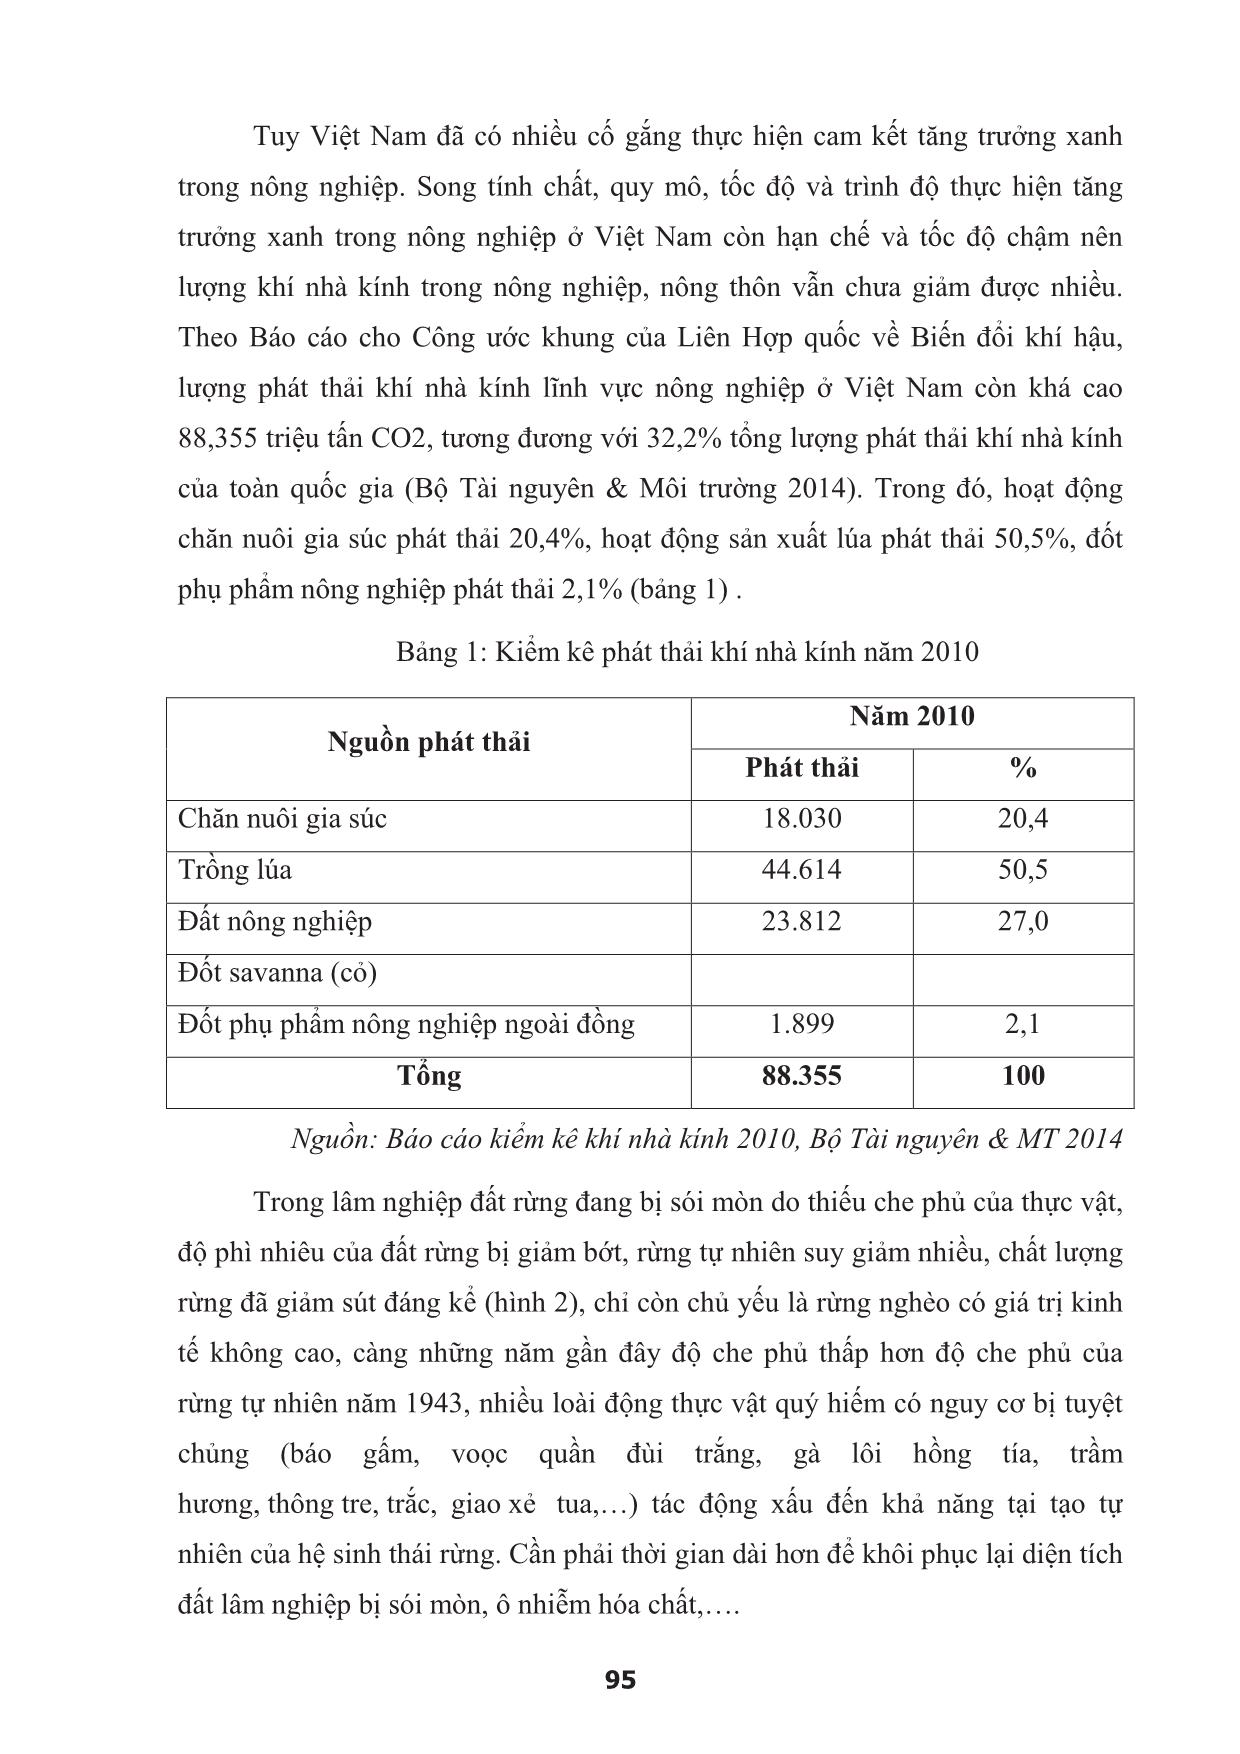 Tăng trưởng xanh trong nông nghiệp Việt Nam - Bối cảnh cách mạng công nghiệp 4.0 trang 7